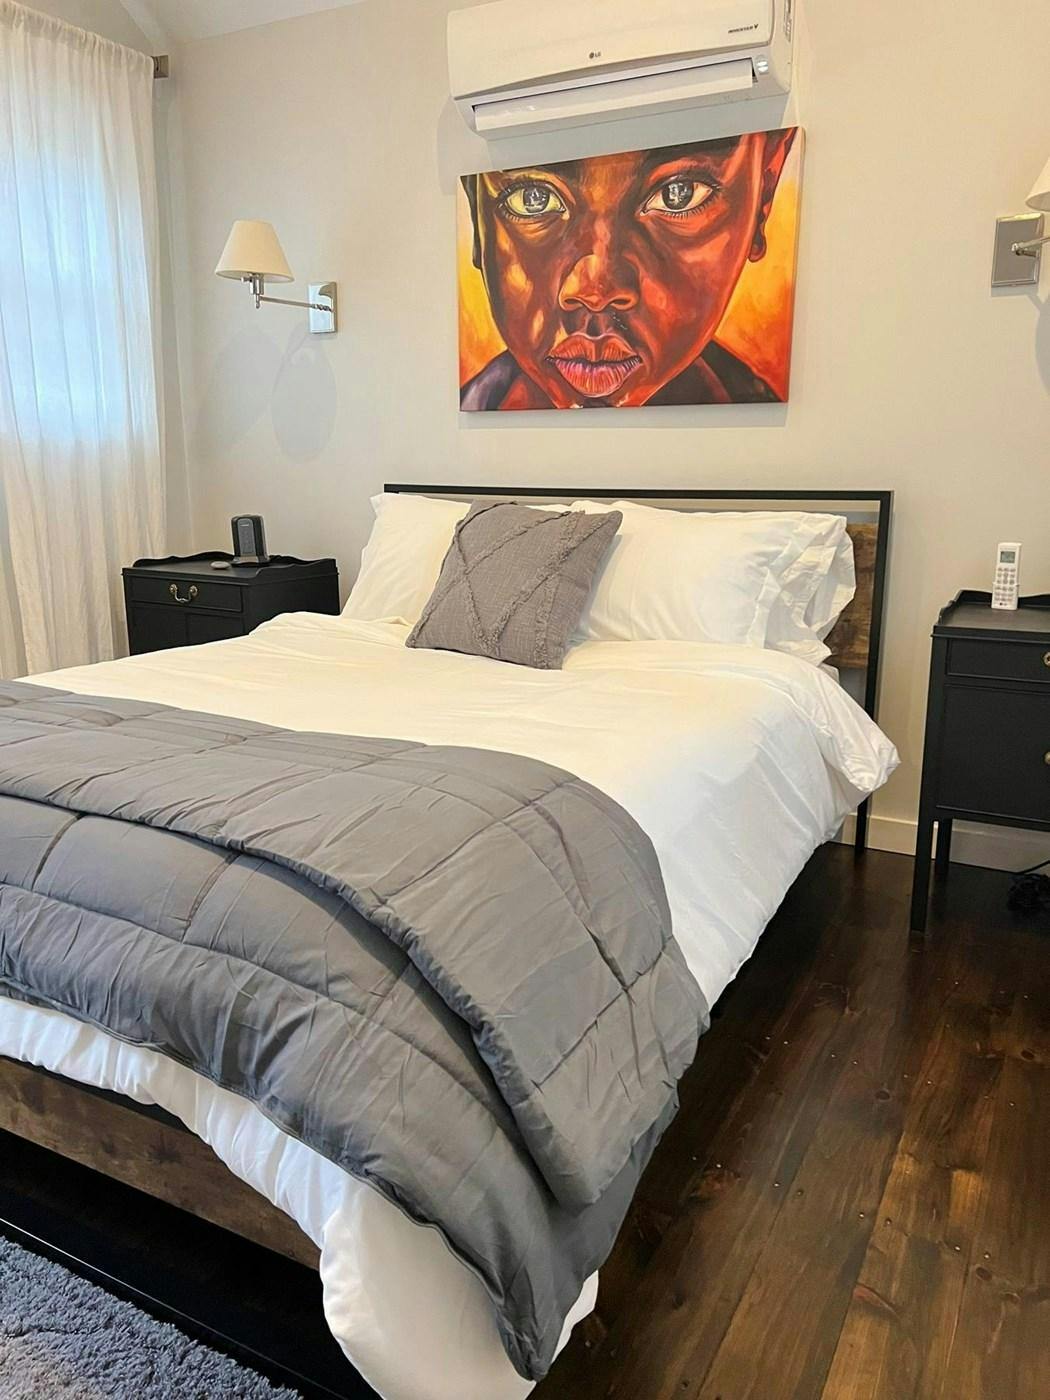 Image 3 - 3 Bedroom Rental in Oak Bluffs, Other - Sleeps 6